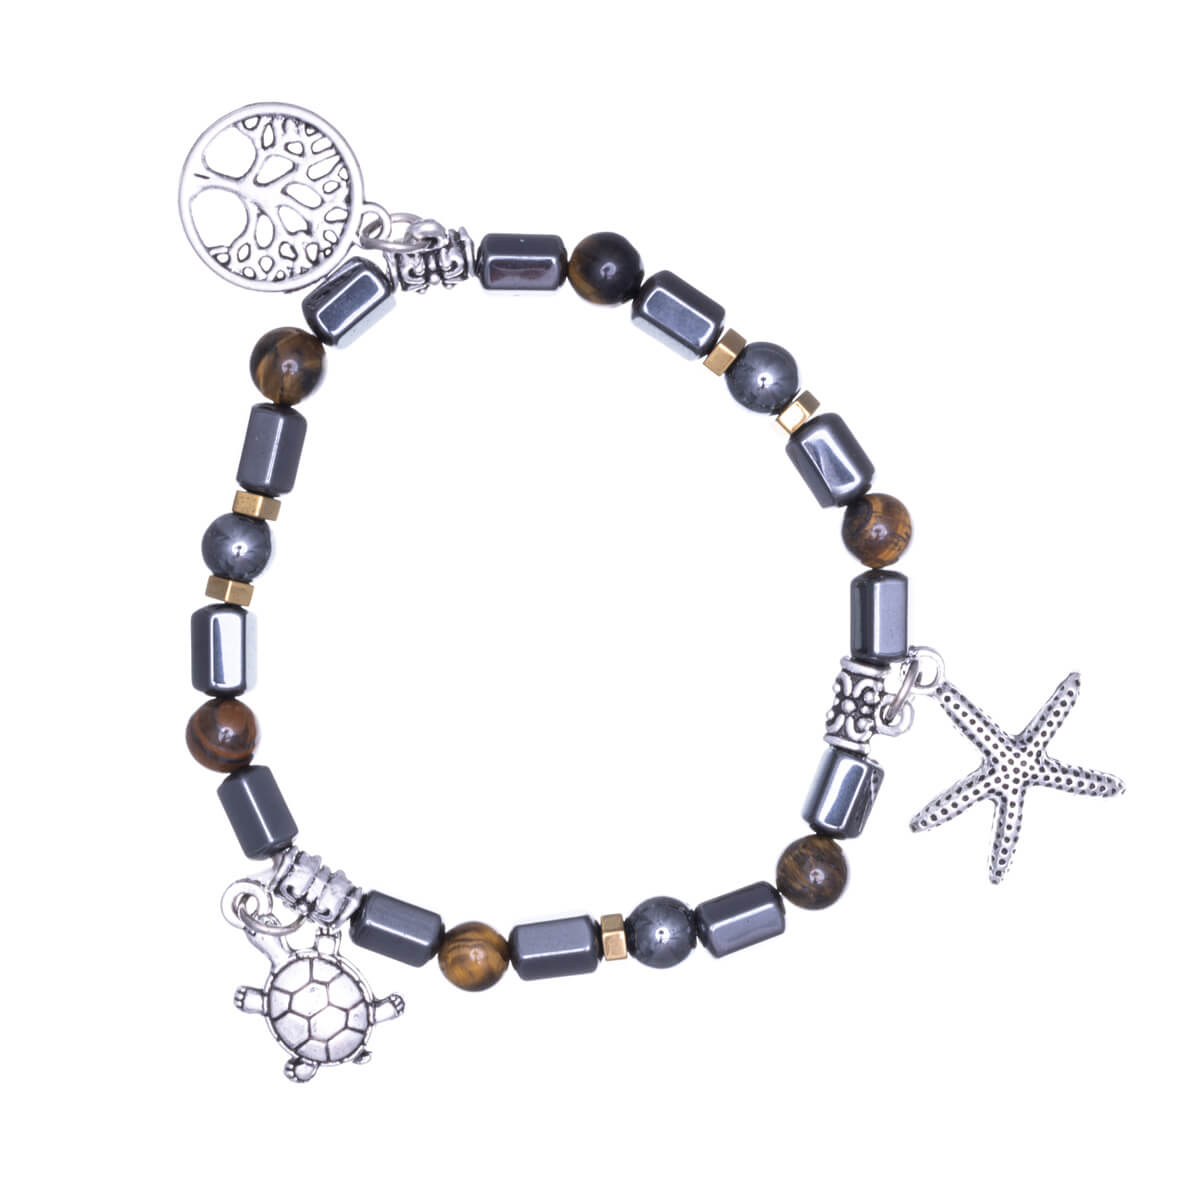 Hematite bracelet with pendants